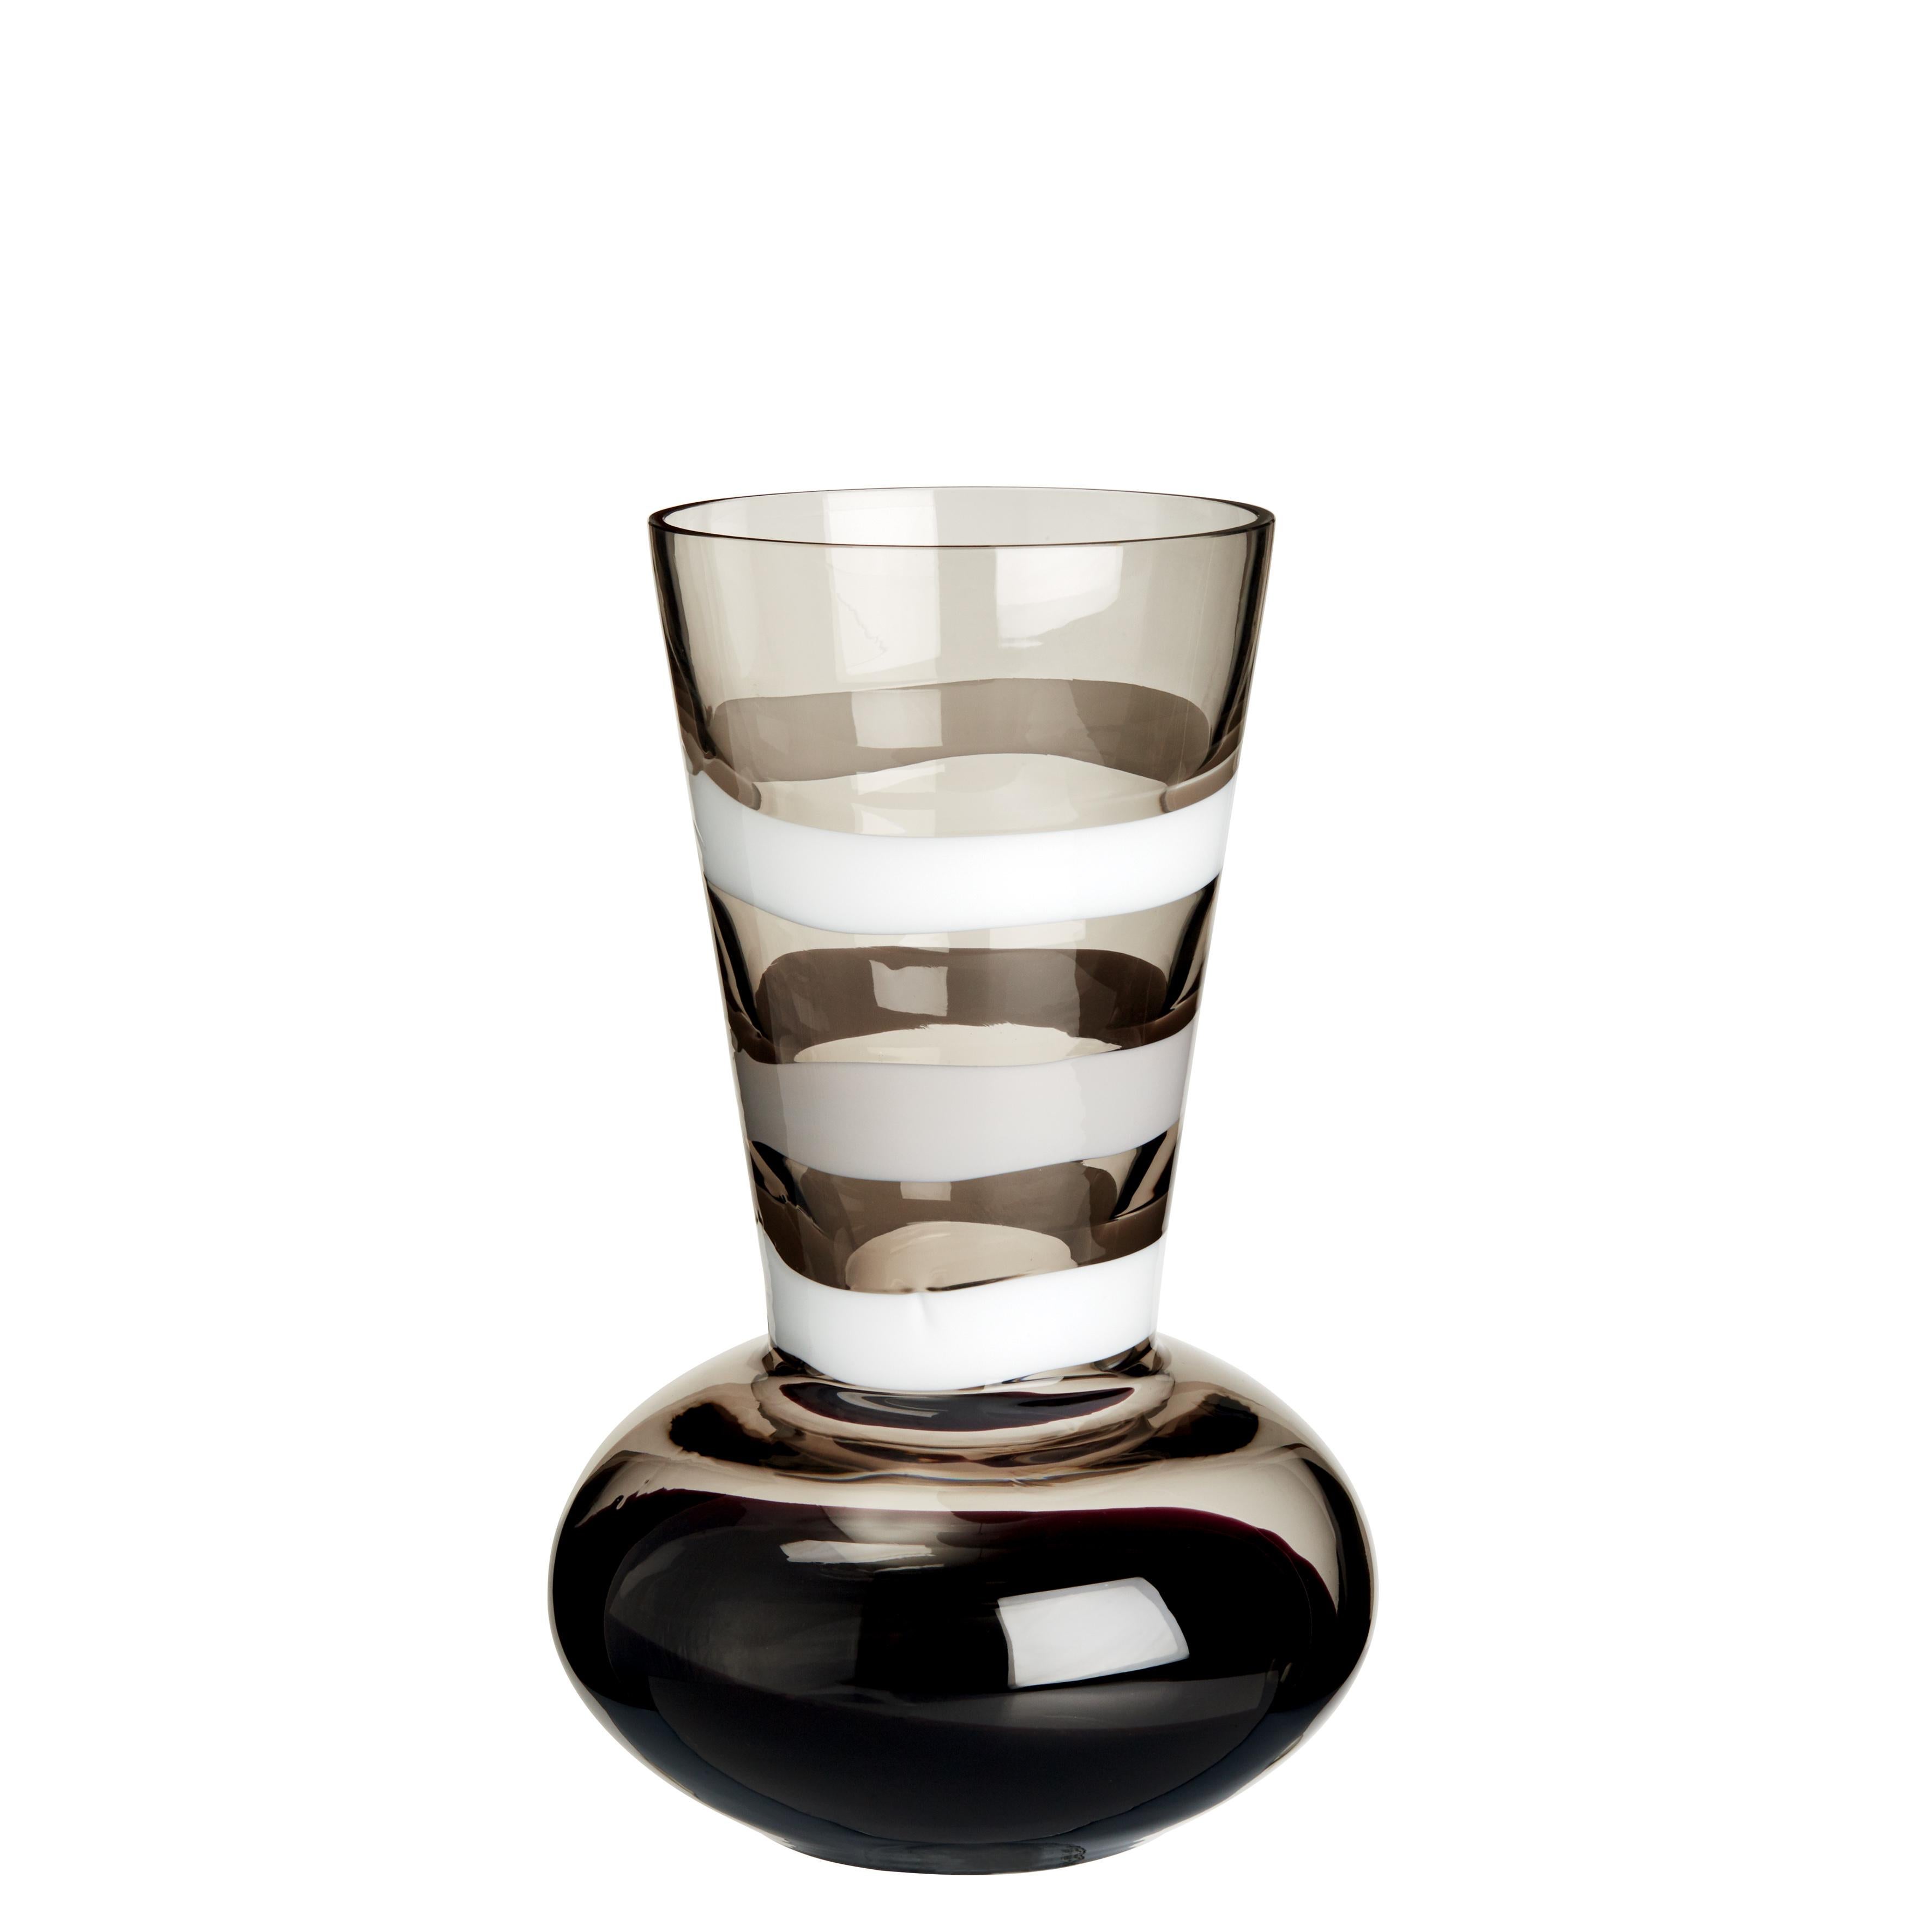 Small Troncosfera Vase in White, Grey and Black by Carlo Moretti